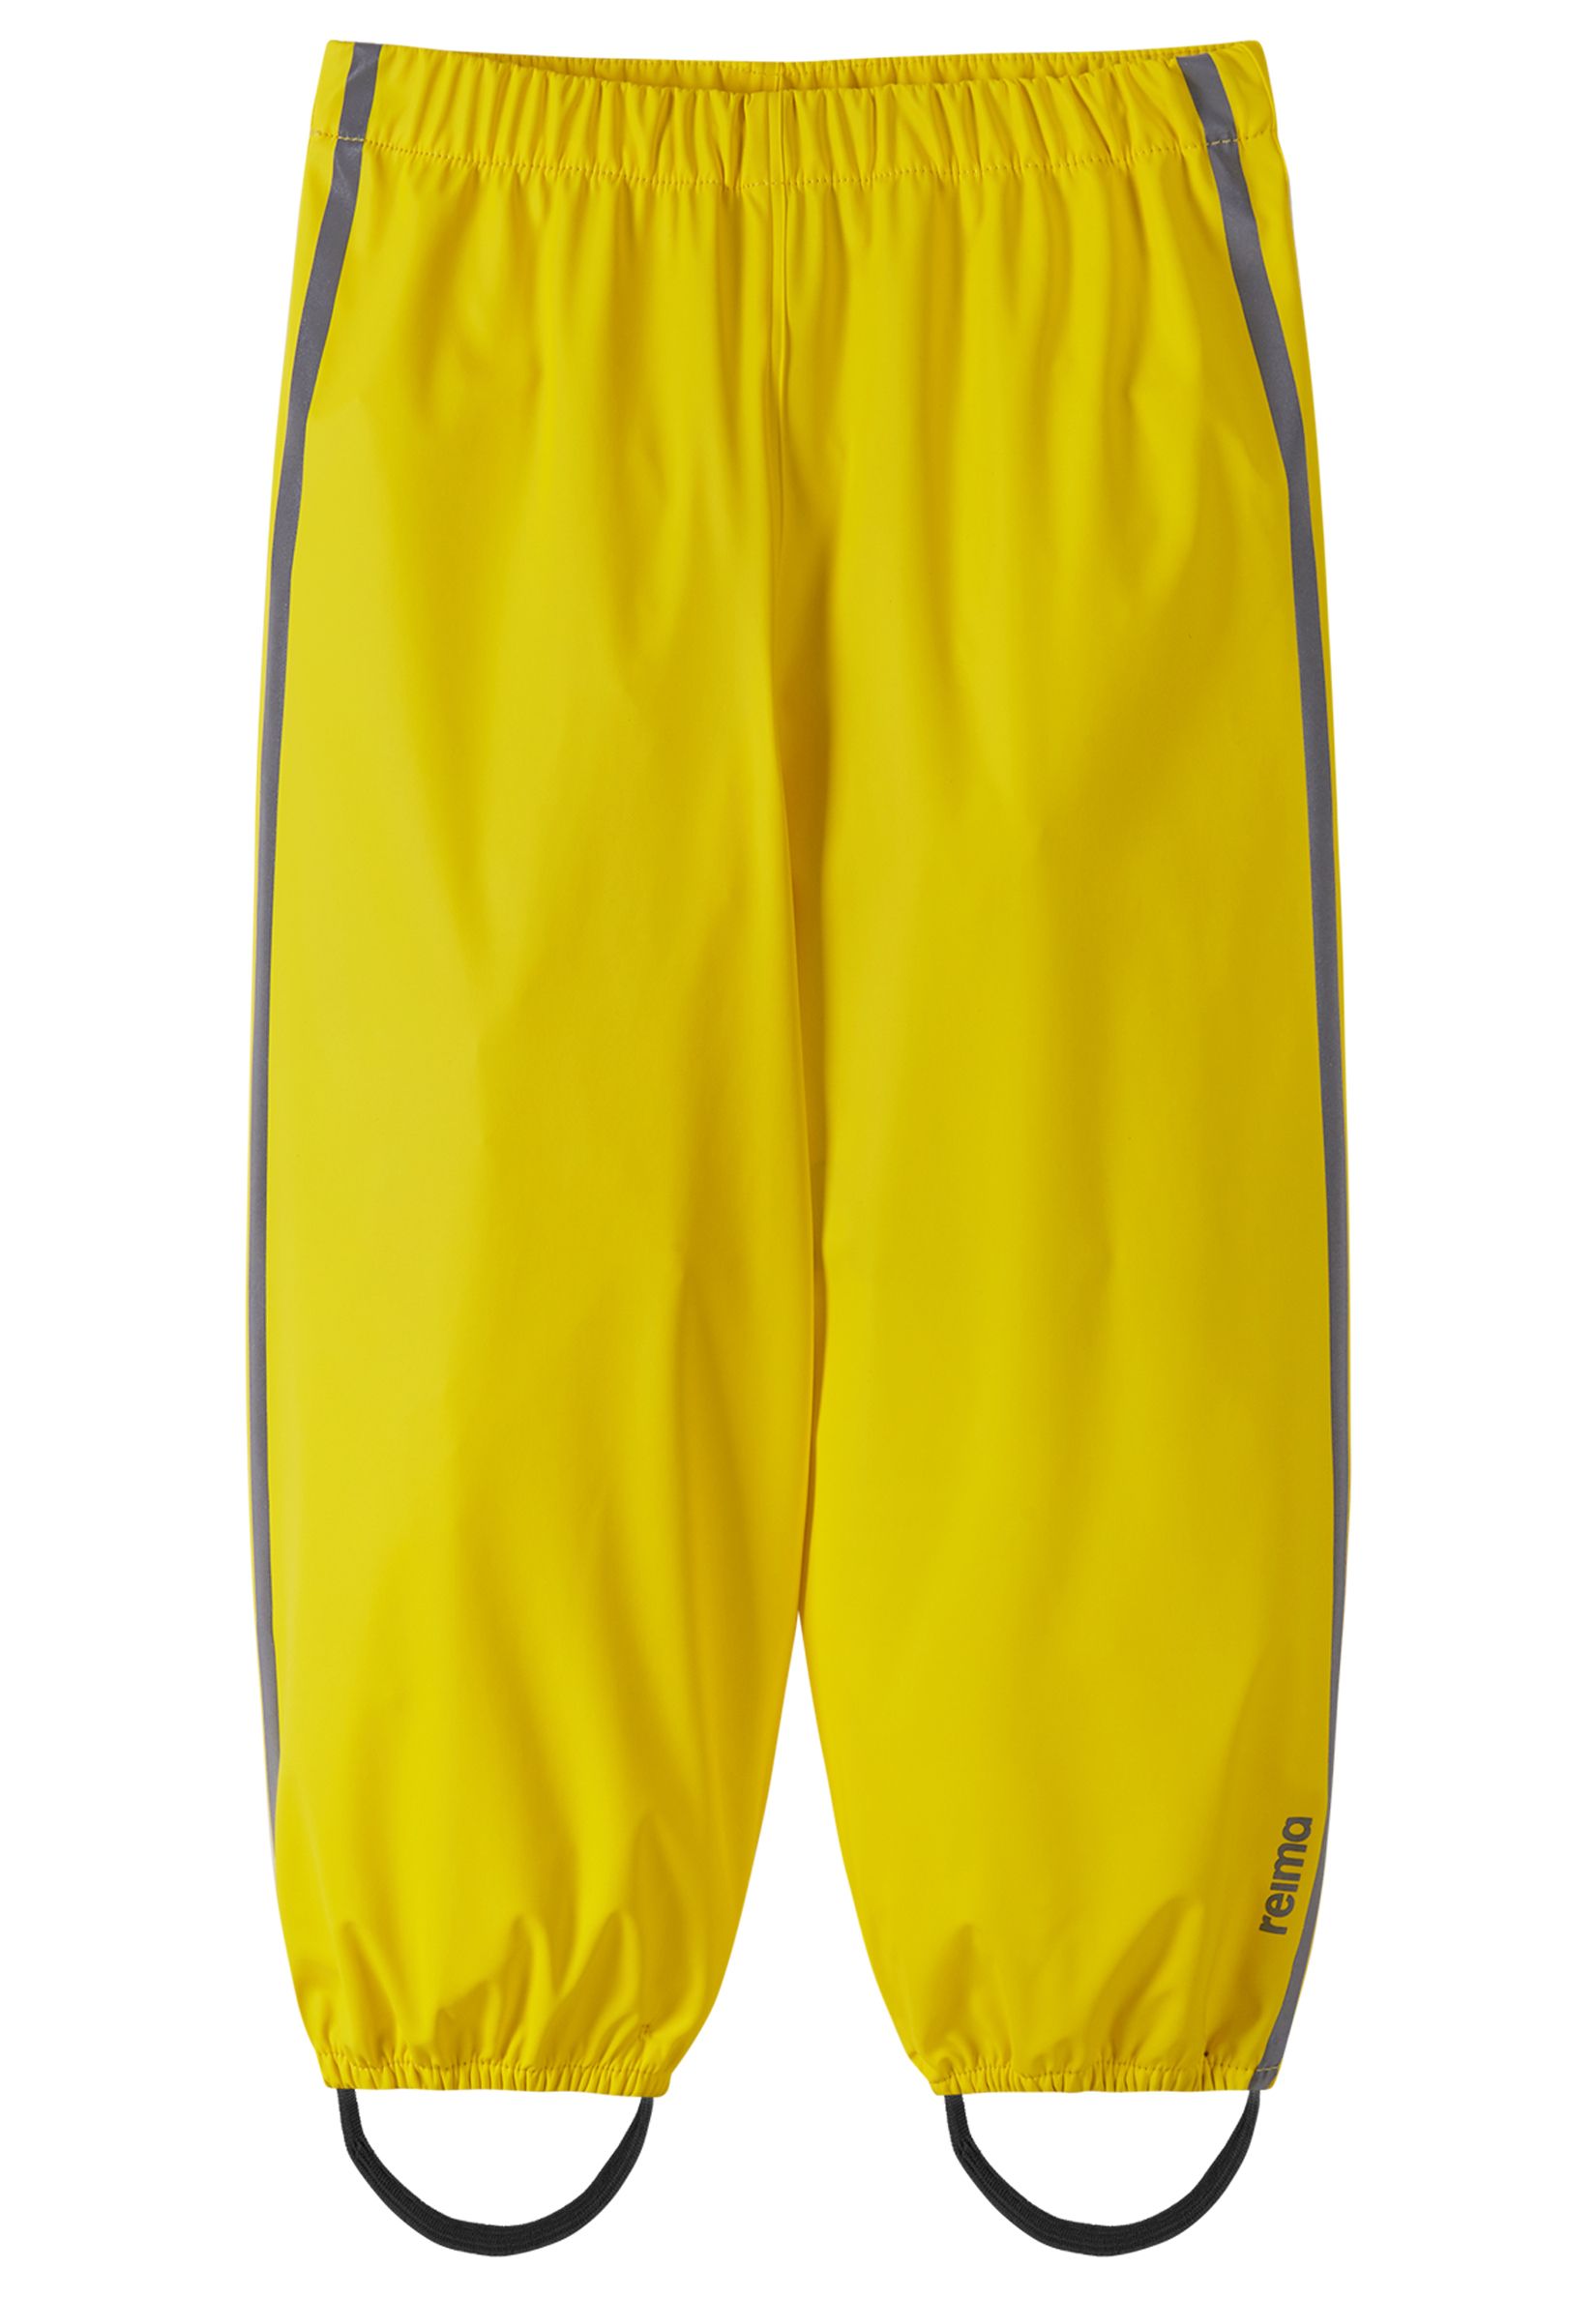 Водонепроницаемые брюки Reima Oja, желтый фото